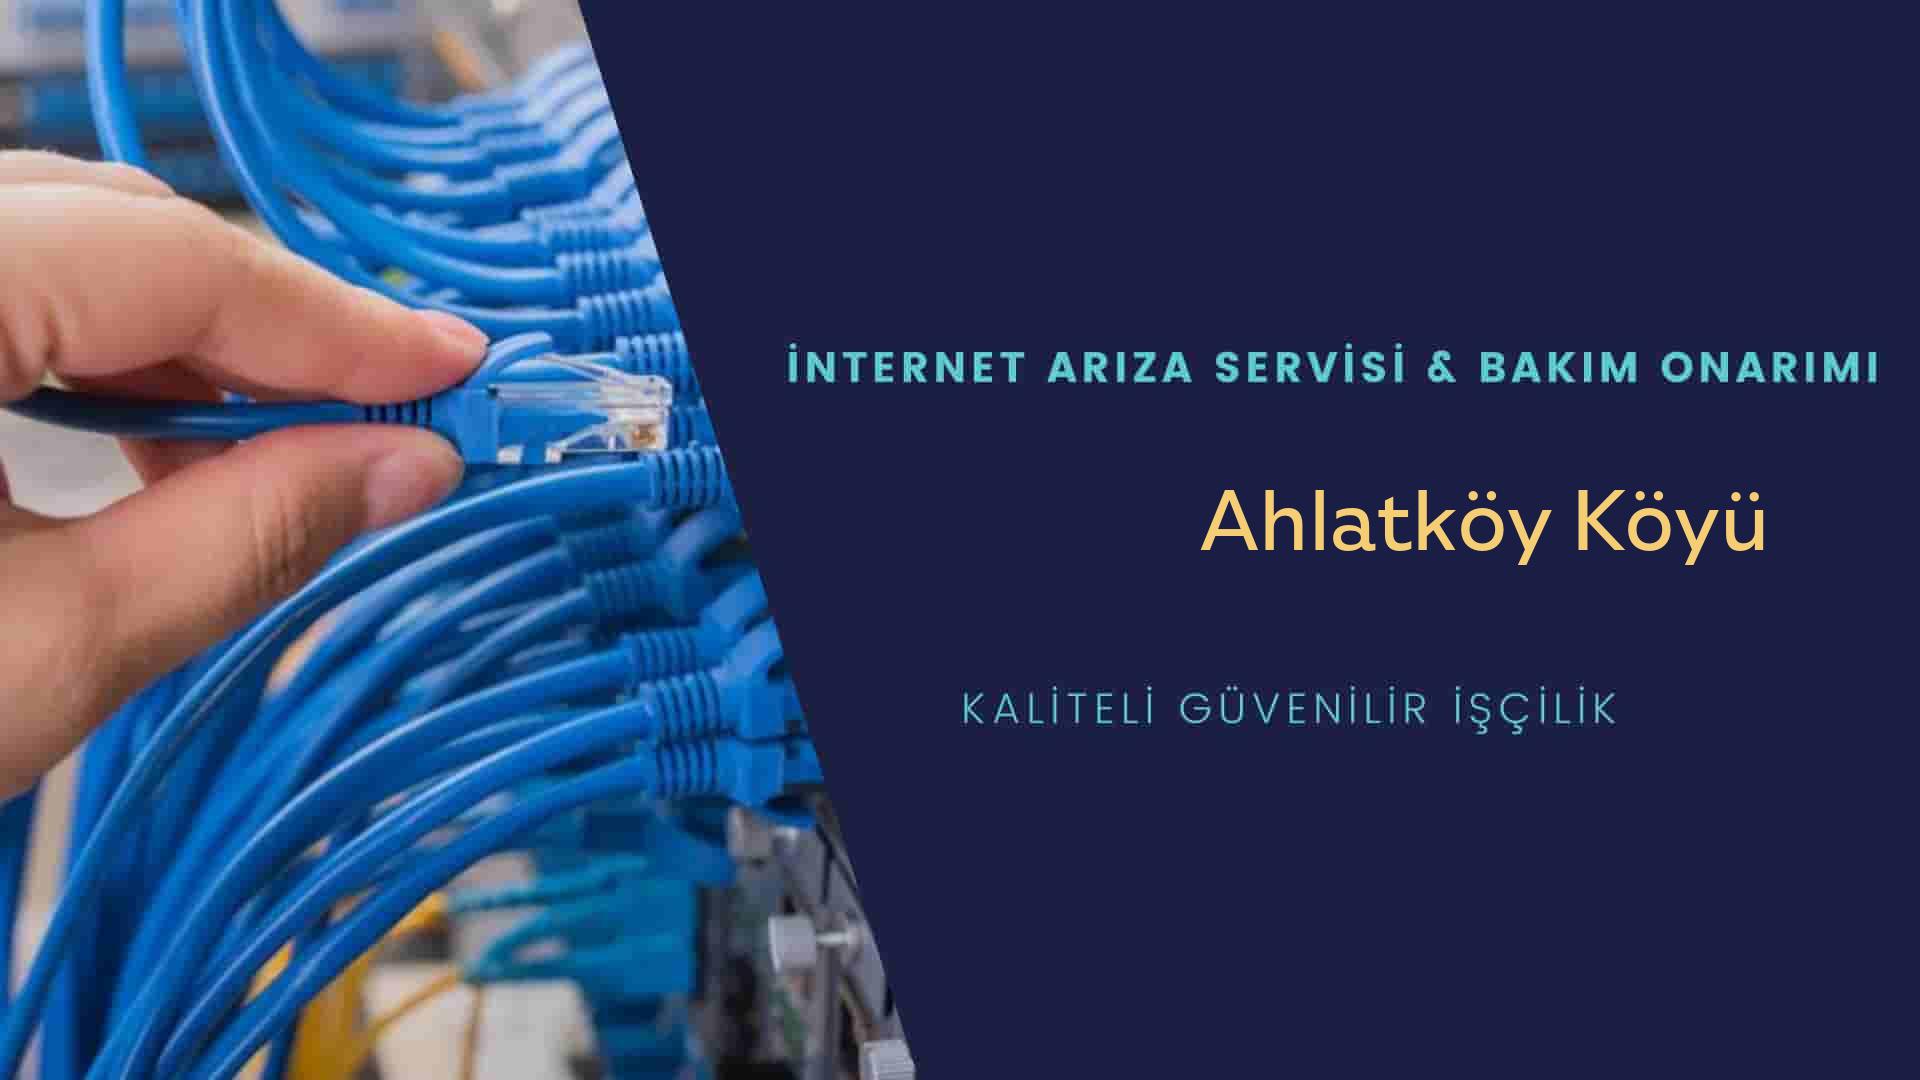 Ahlatköy Köyü internet kablosu çekimi yapan yerler veya elektrikçiler mi? arıyorsunuz doğru yerdesiniz o zaman sizlere 7/24 yardımcı olacak profesyonel ustalarımız bir telefon kadar yakındır size.